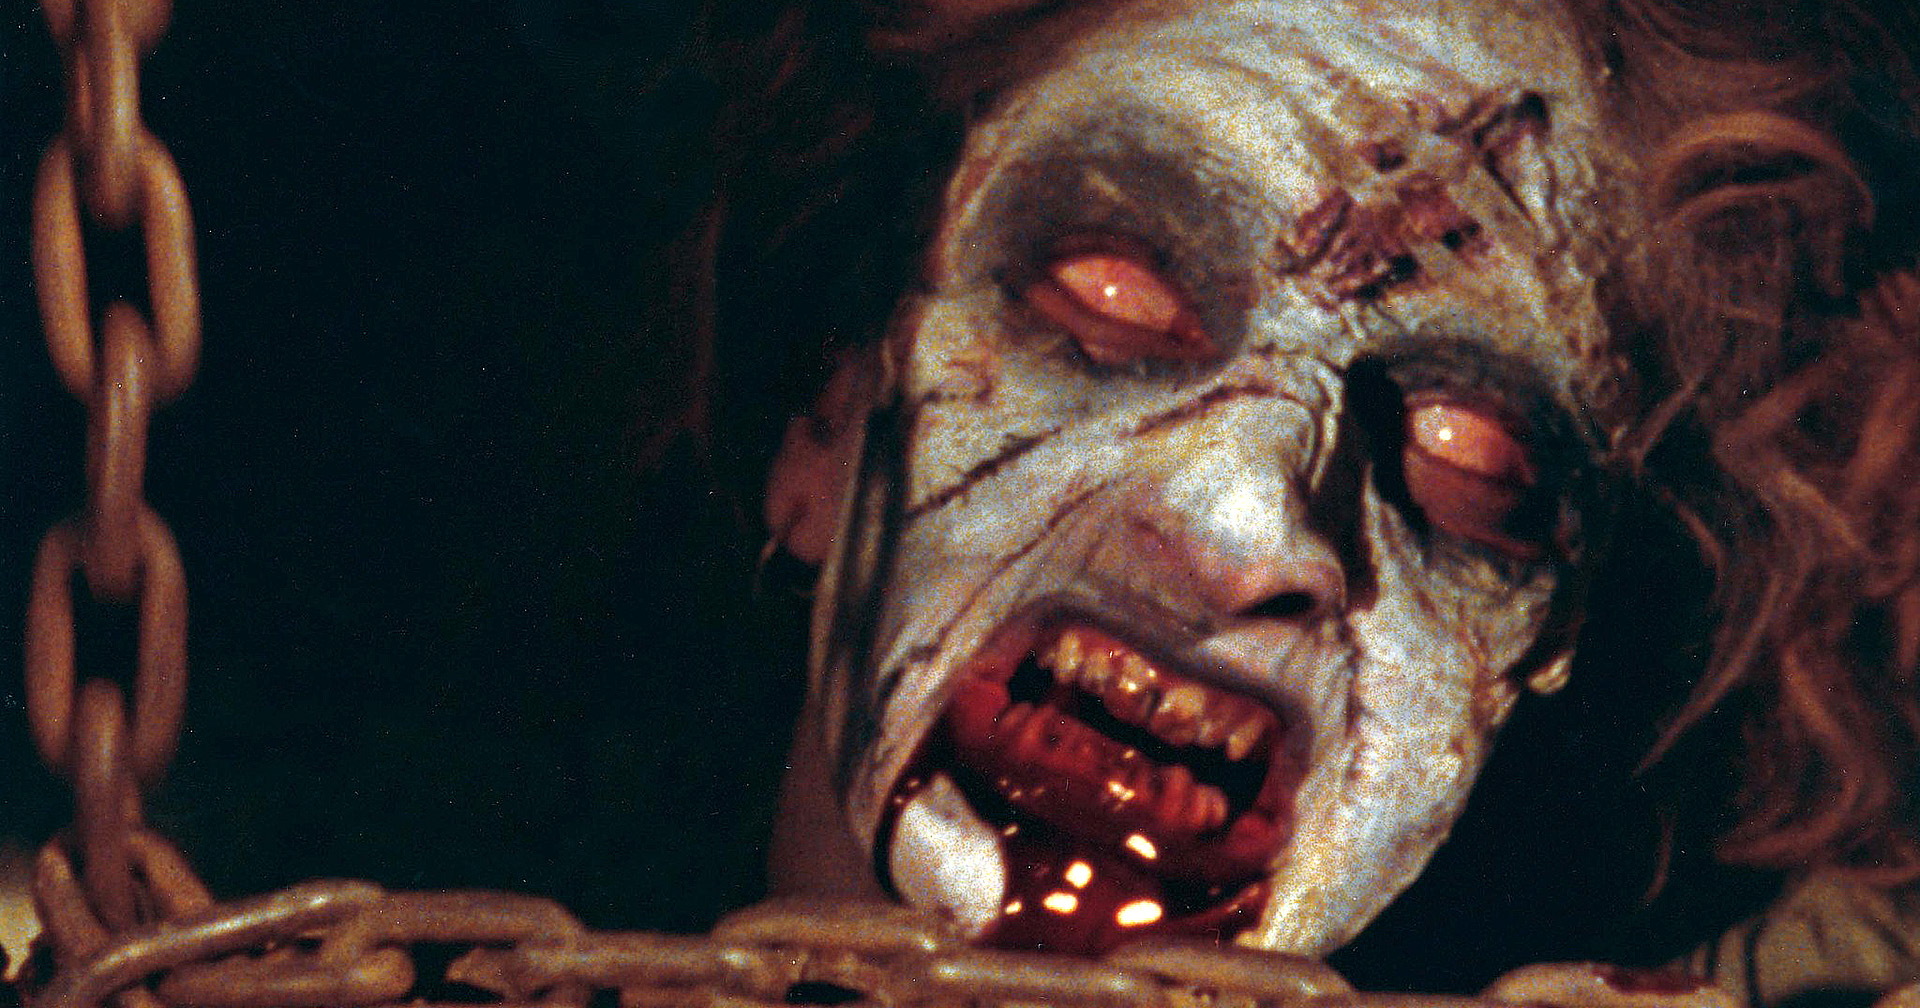 ผู้สร้าง Evil Dead และผู้กำกับ Ghostbusters เวอร์ชันรีบูต ร่วมมือกันสร้างหนังสยองขวัญ-คอมเมดี้ ‘Suburban Hell’